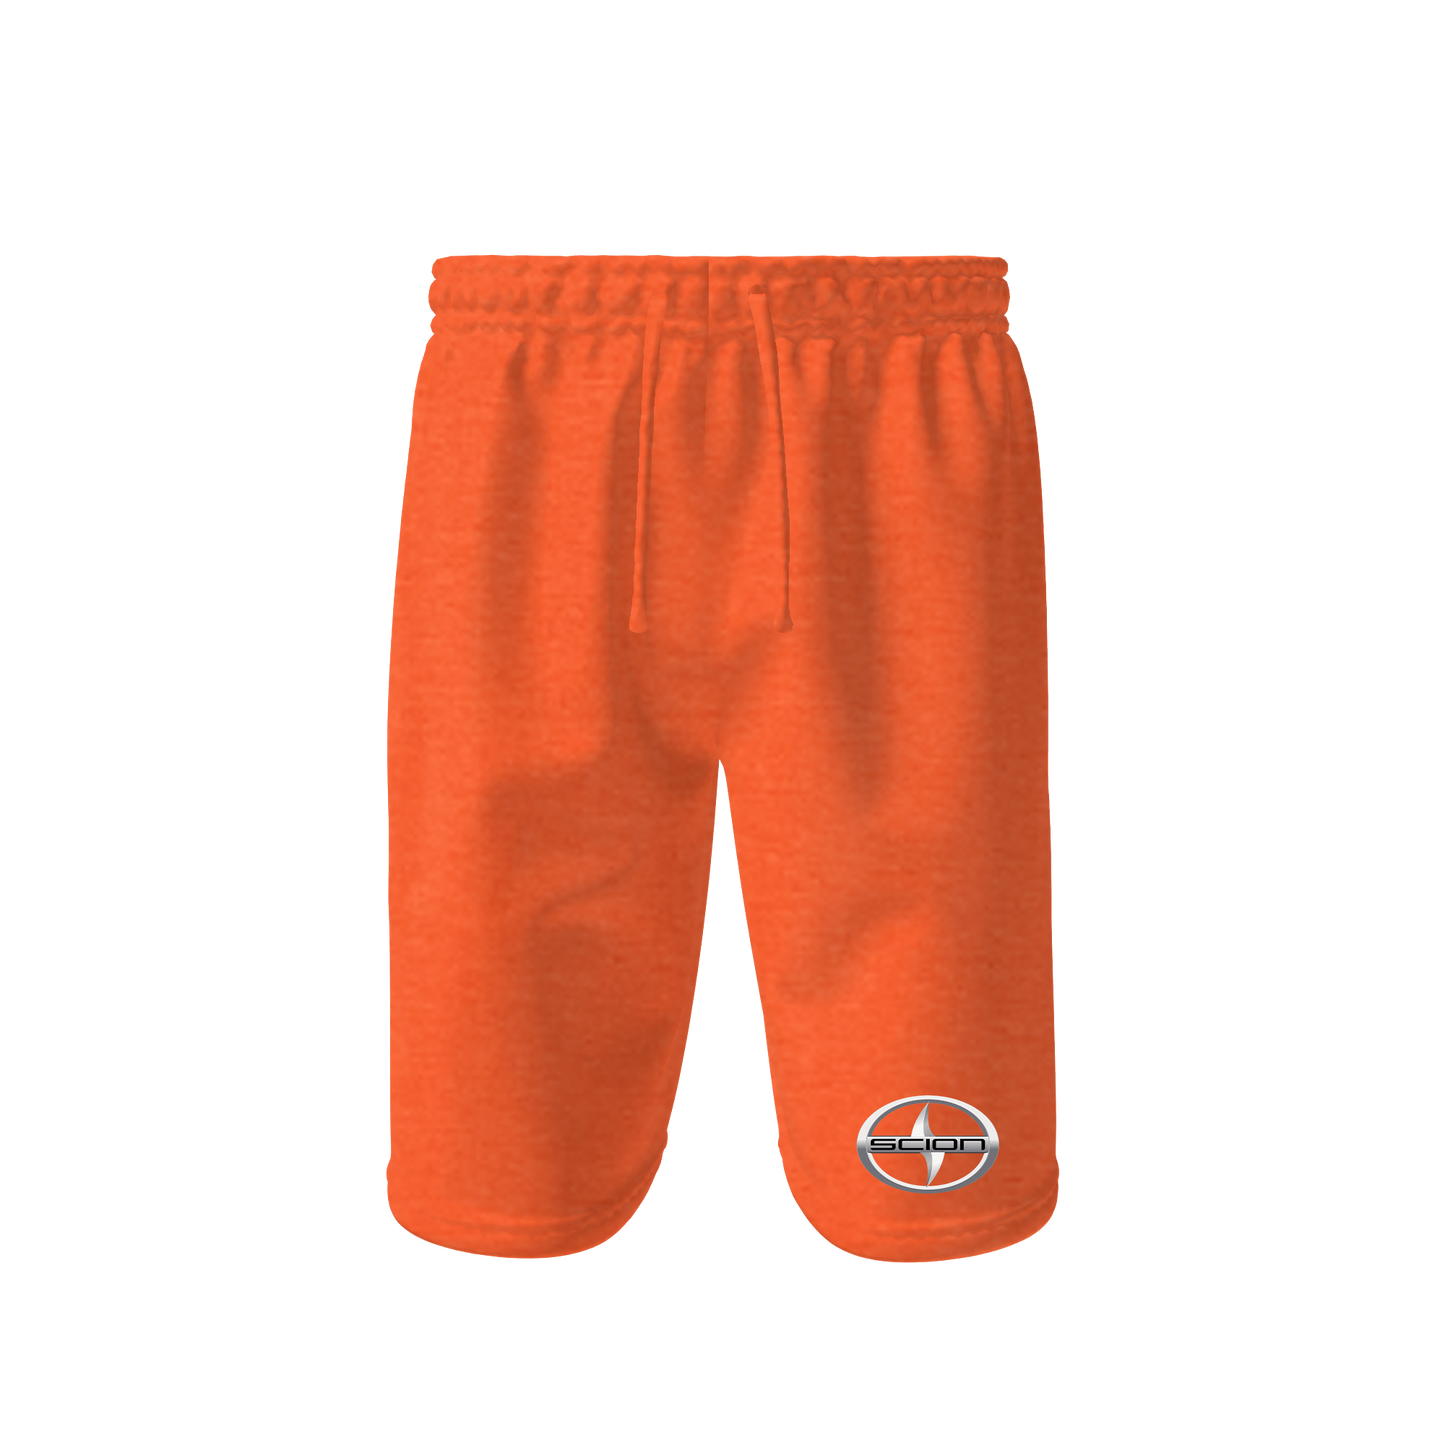 Men’s Scion Car Athletic Fleece Shorts